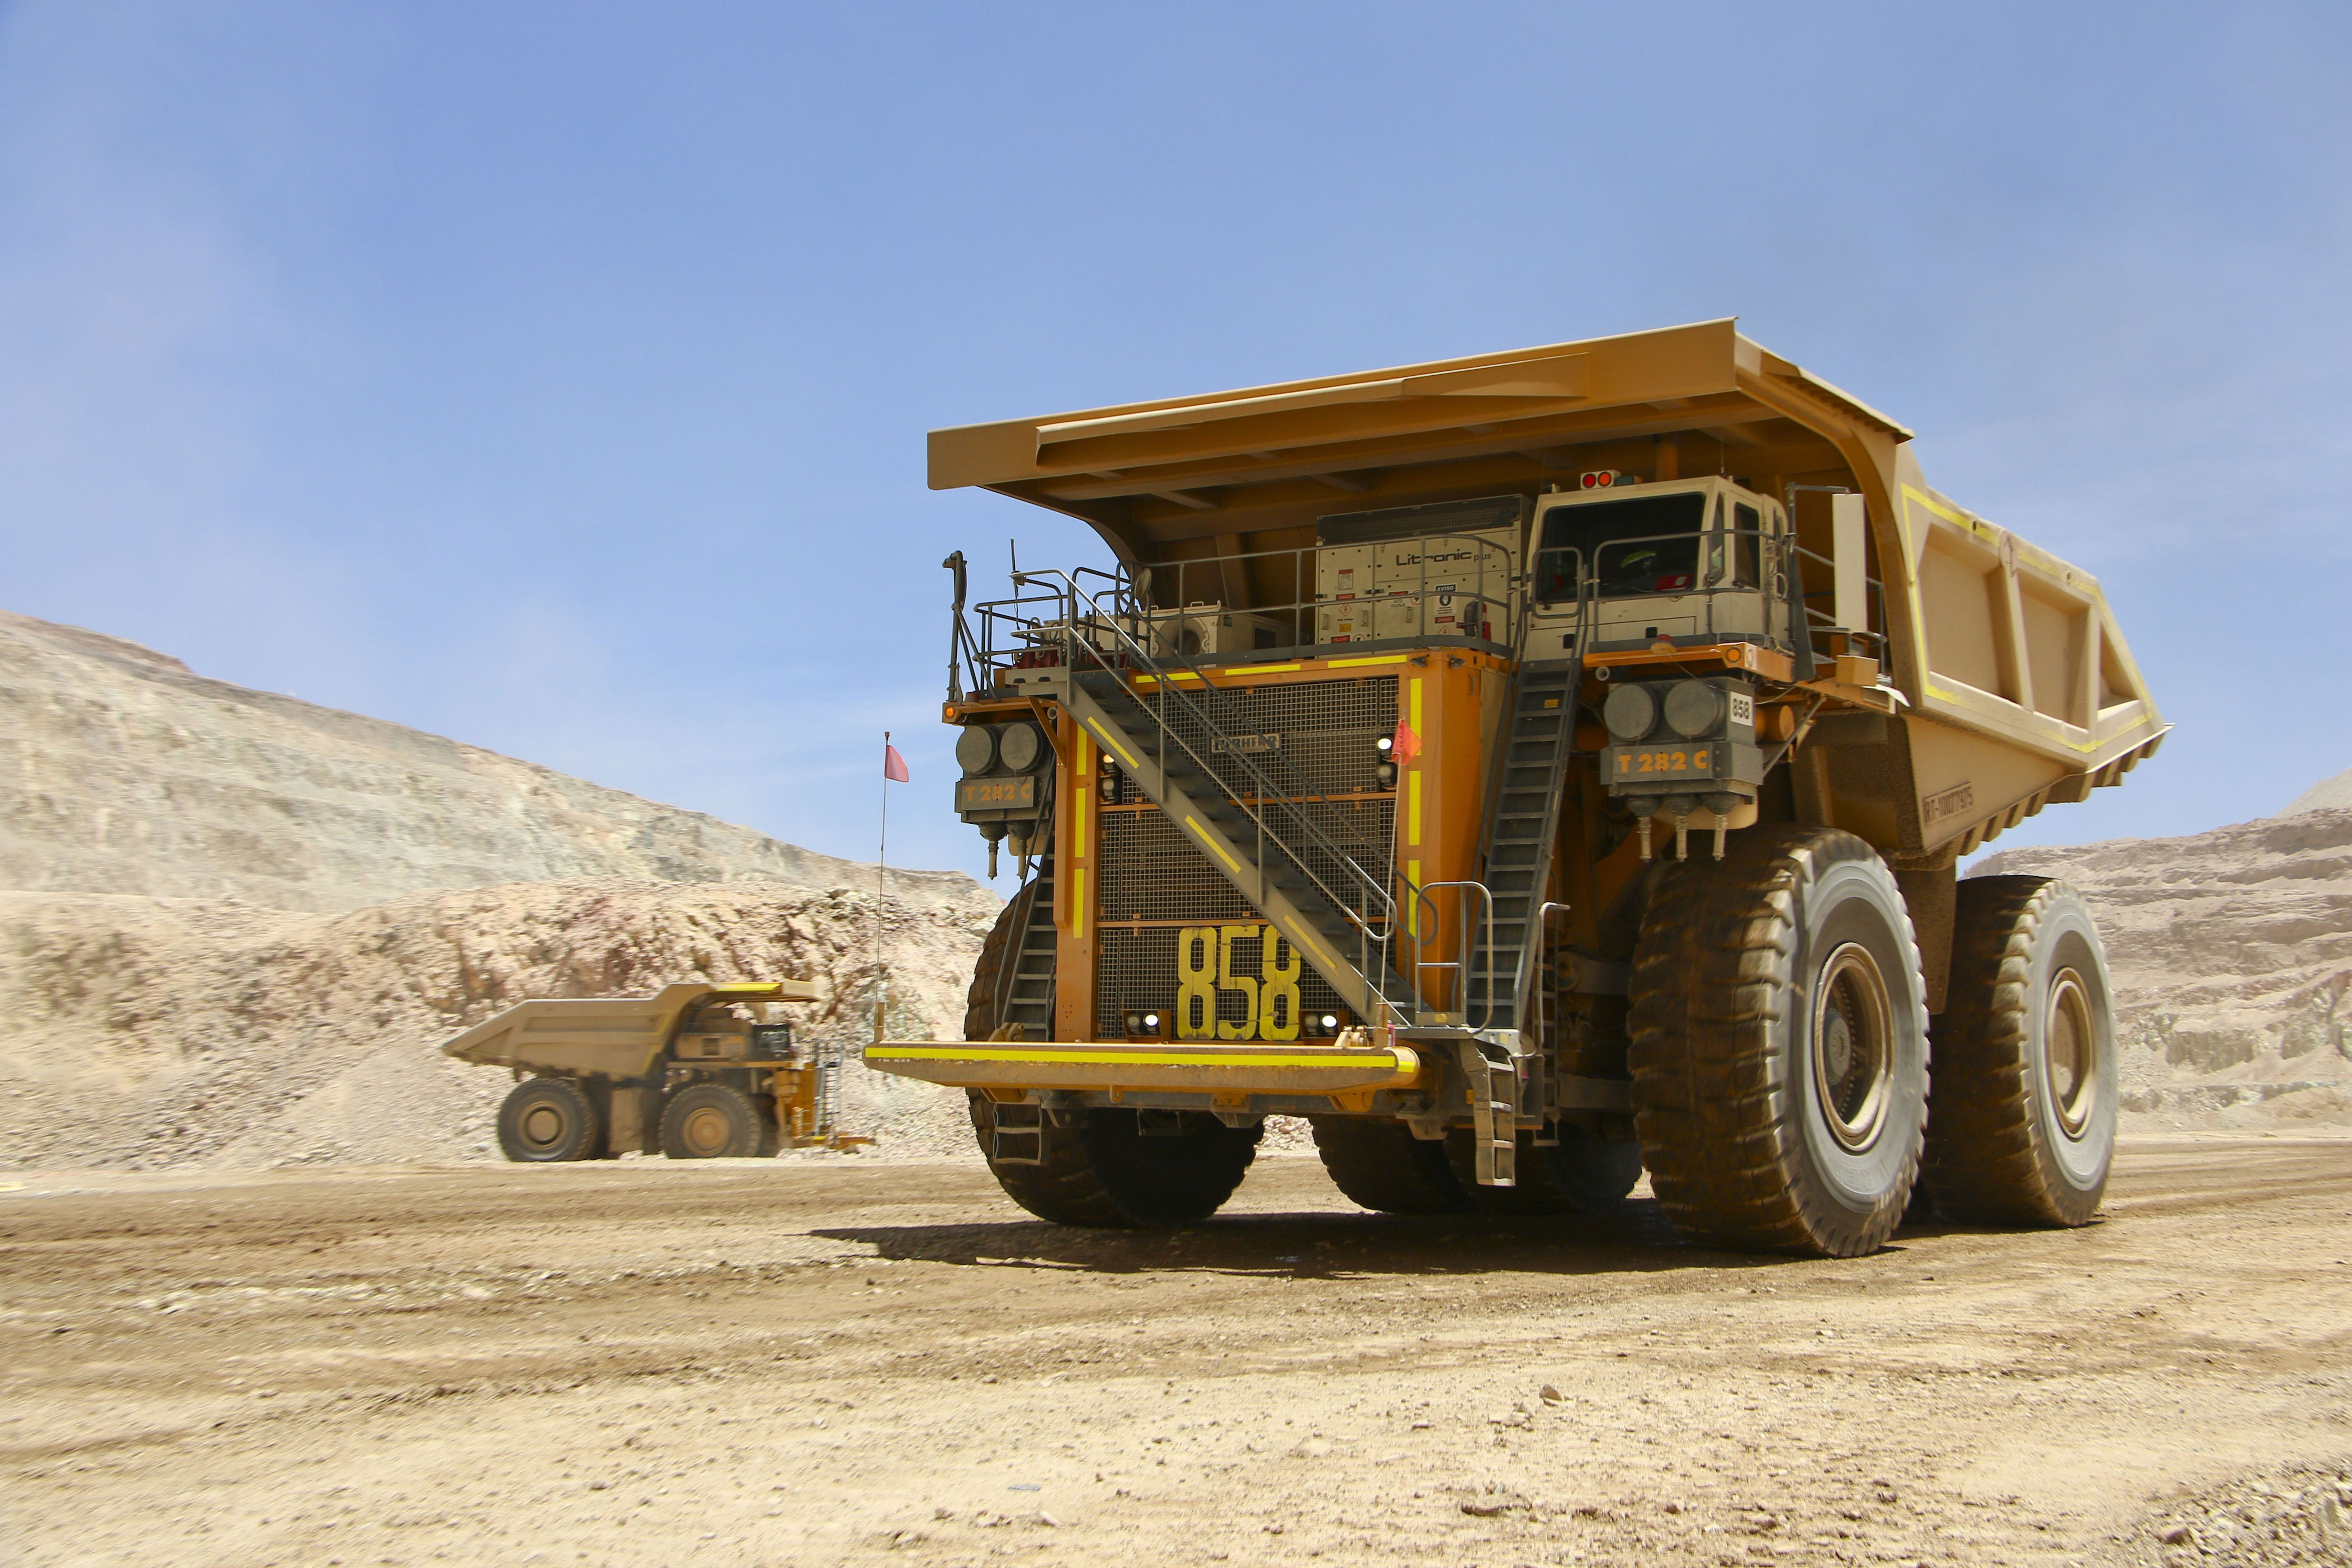 producción de cobre de principales mineras que operan en chile cerró dispar en diciembre